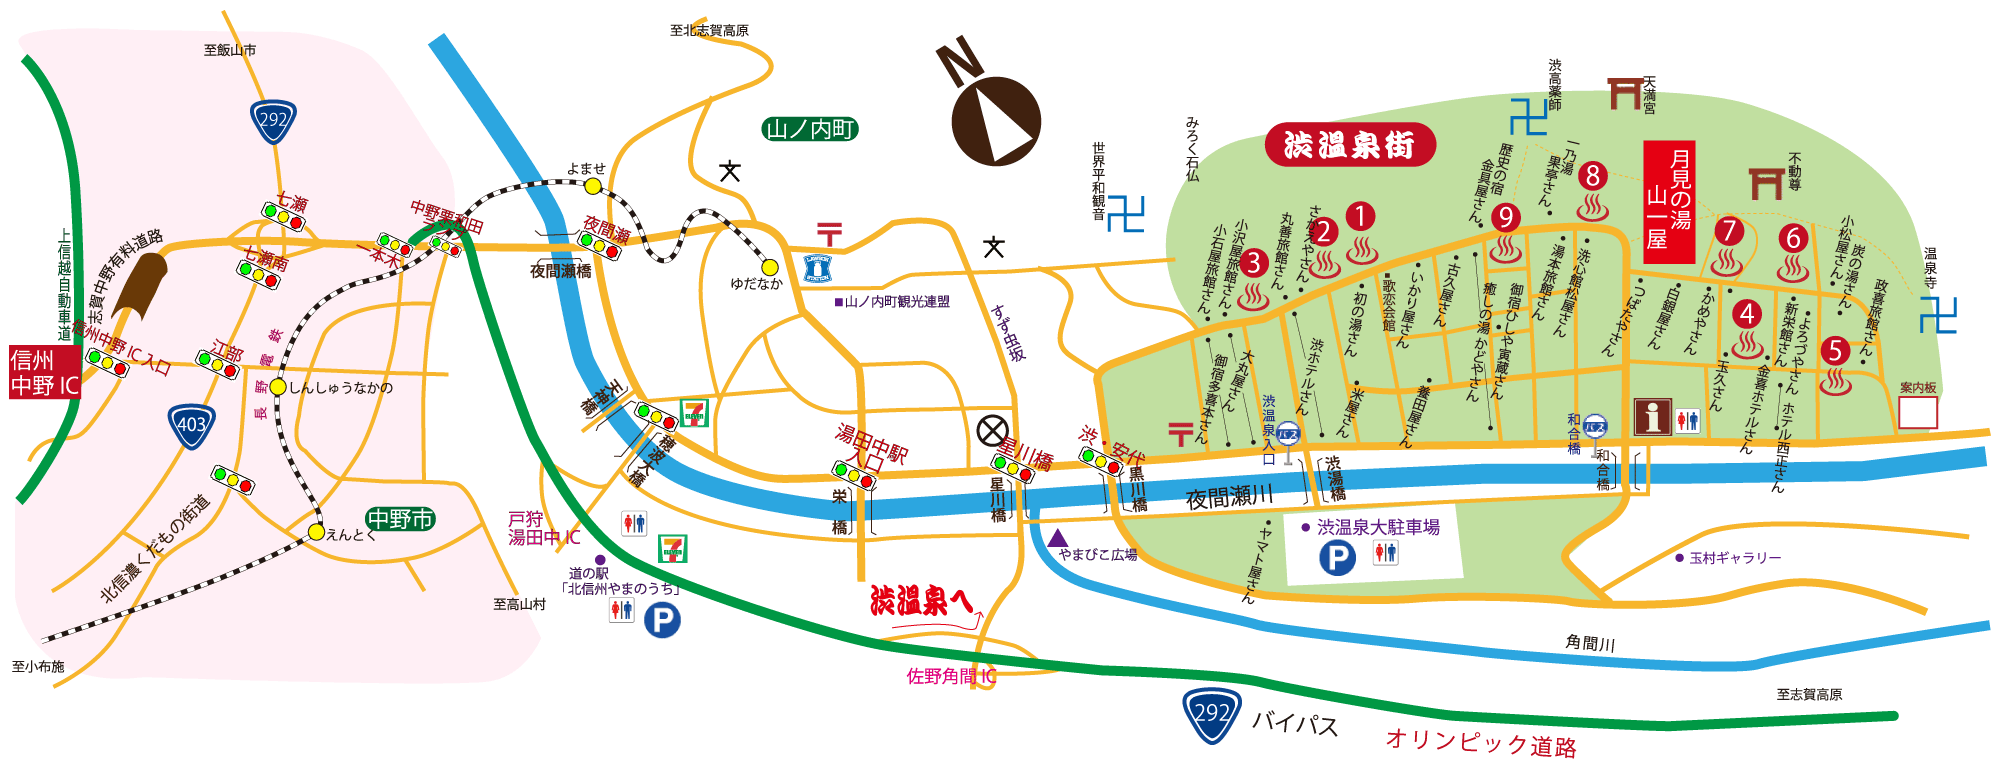 渋温泉街周辺地図です。